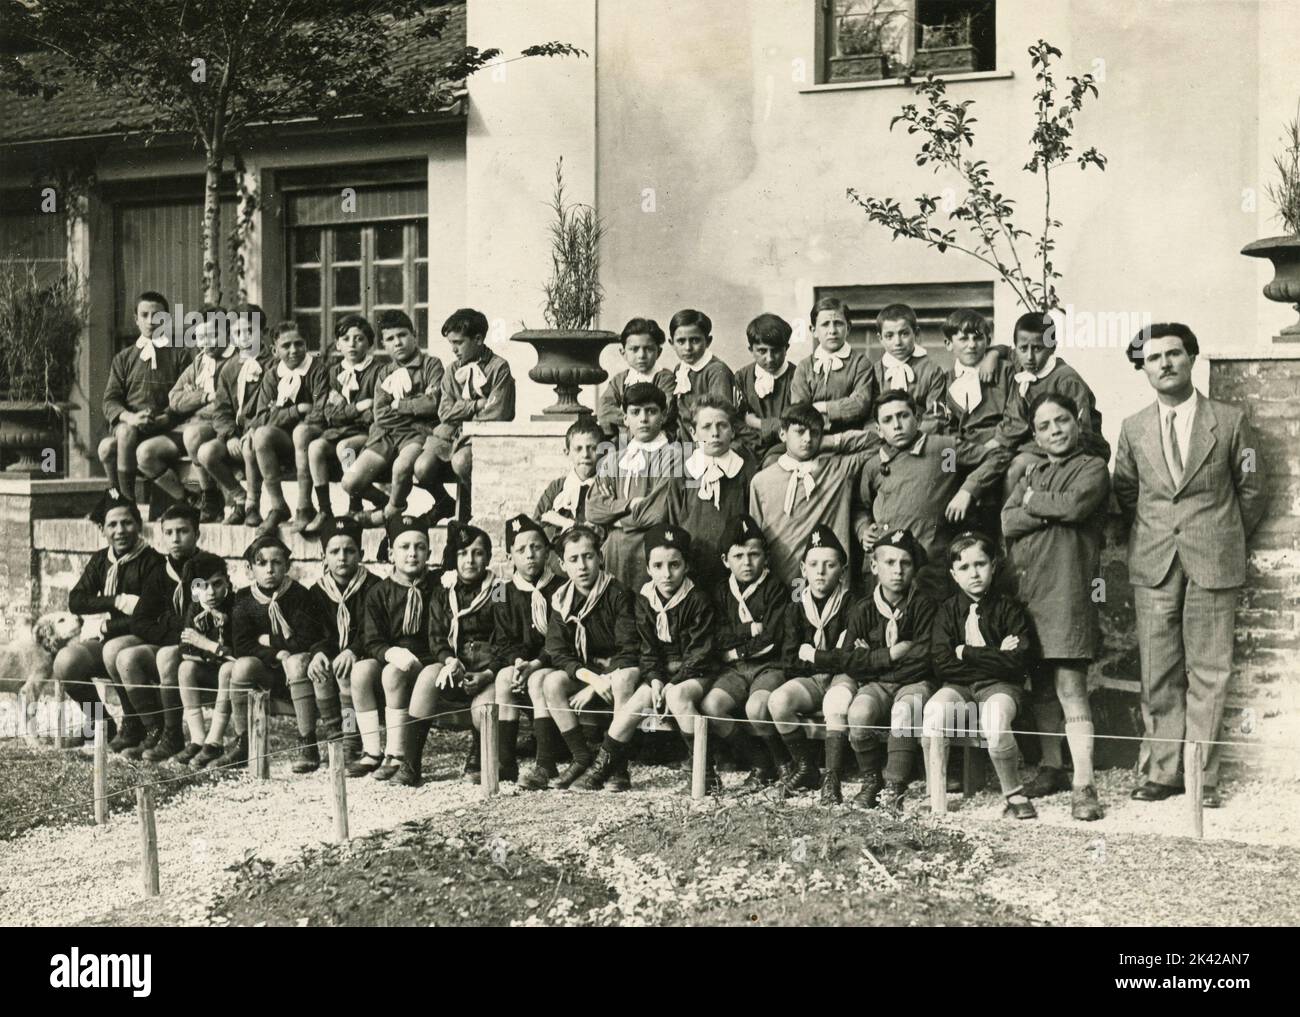 Traditionelles Klassenfoto der Schüler mit Schürze und Balilla-Faschistenuniform, Italien 1920s Stockfoto